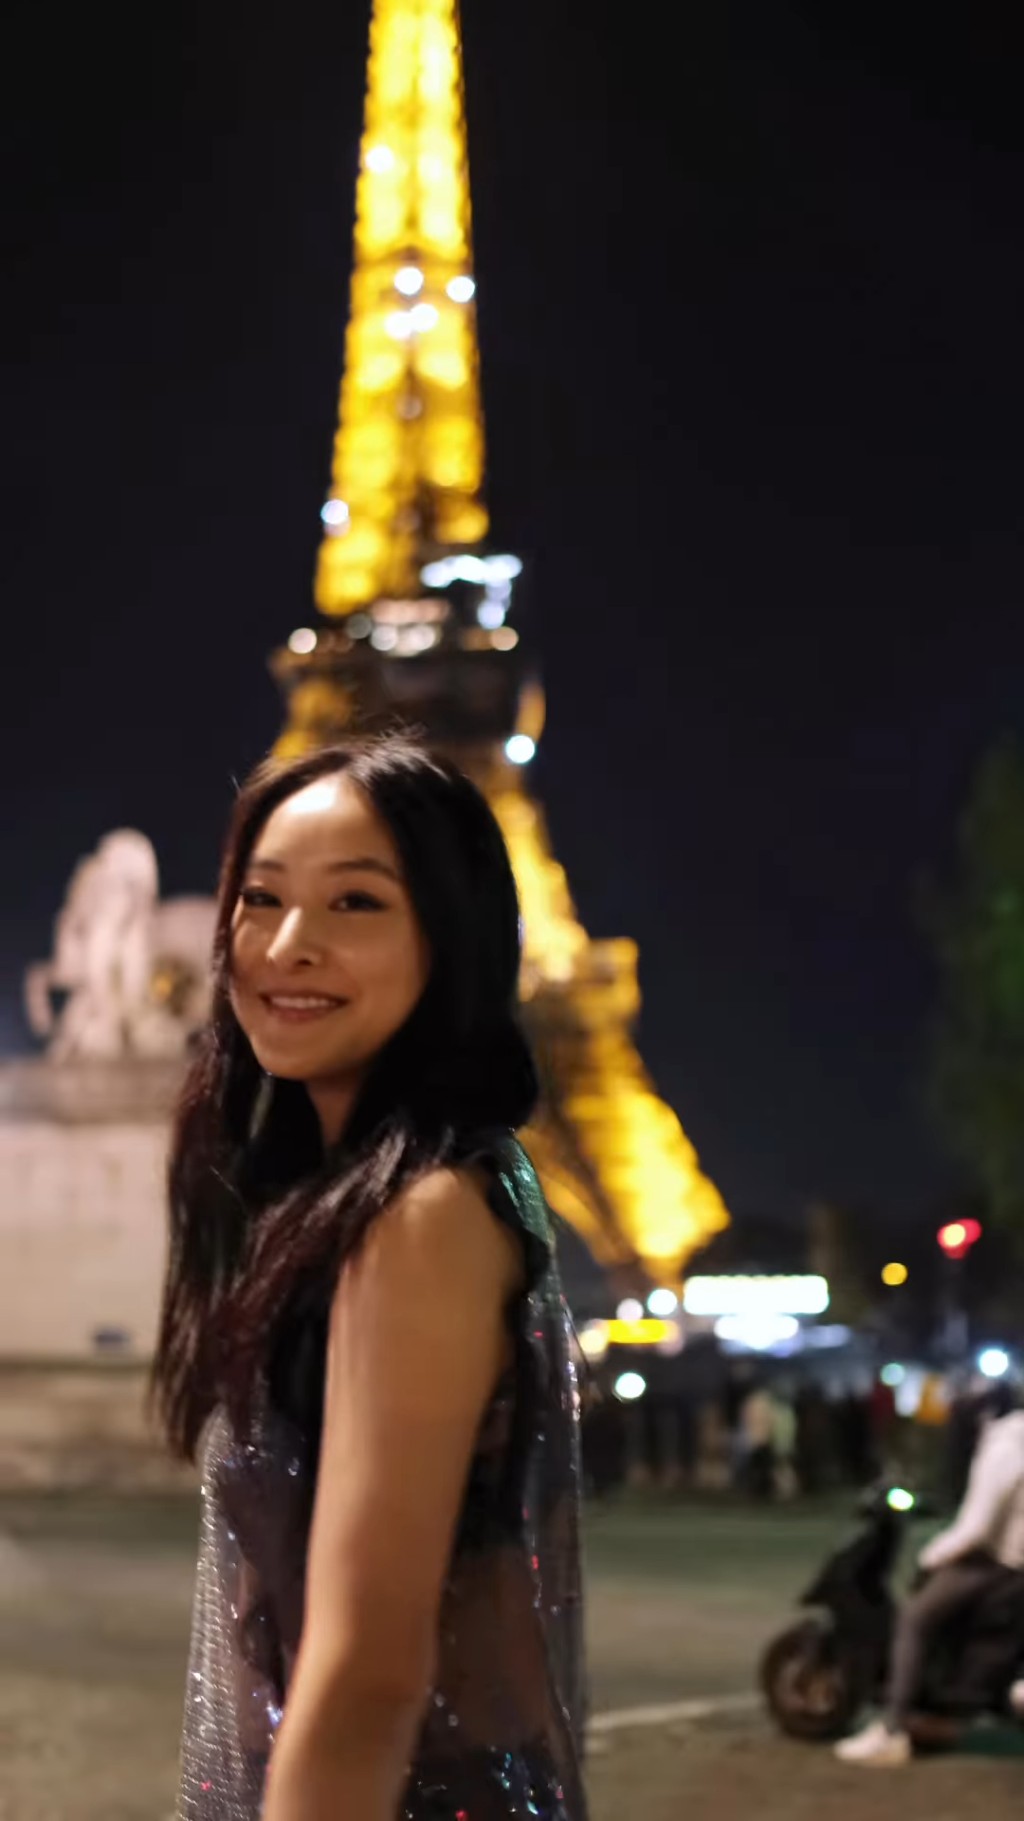 陈滢近日分享在巴黎拍摄的新相。